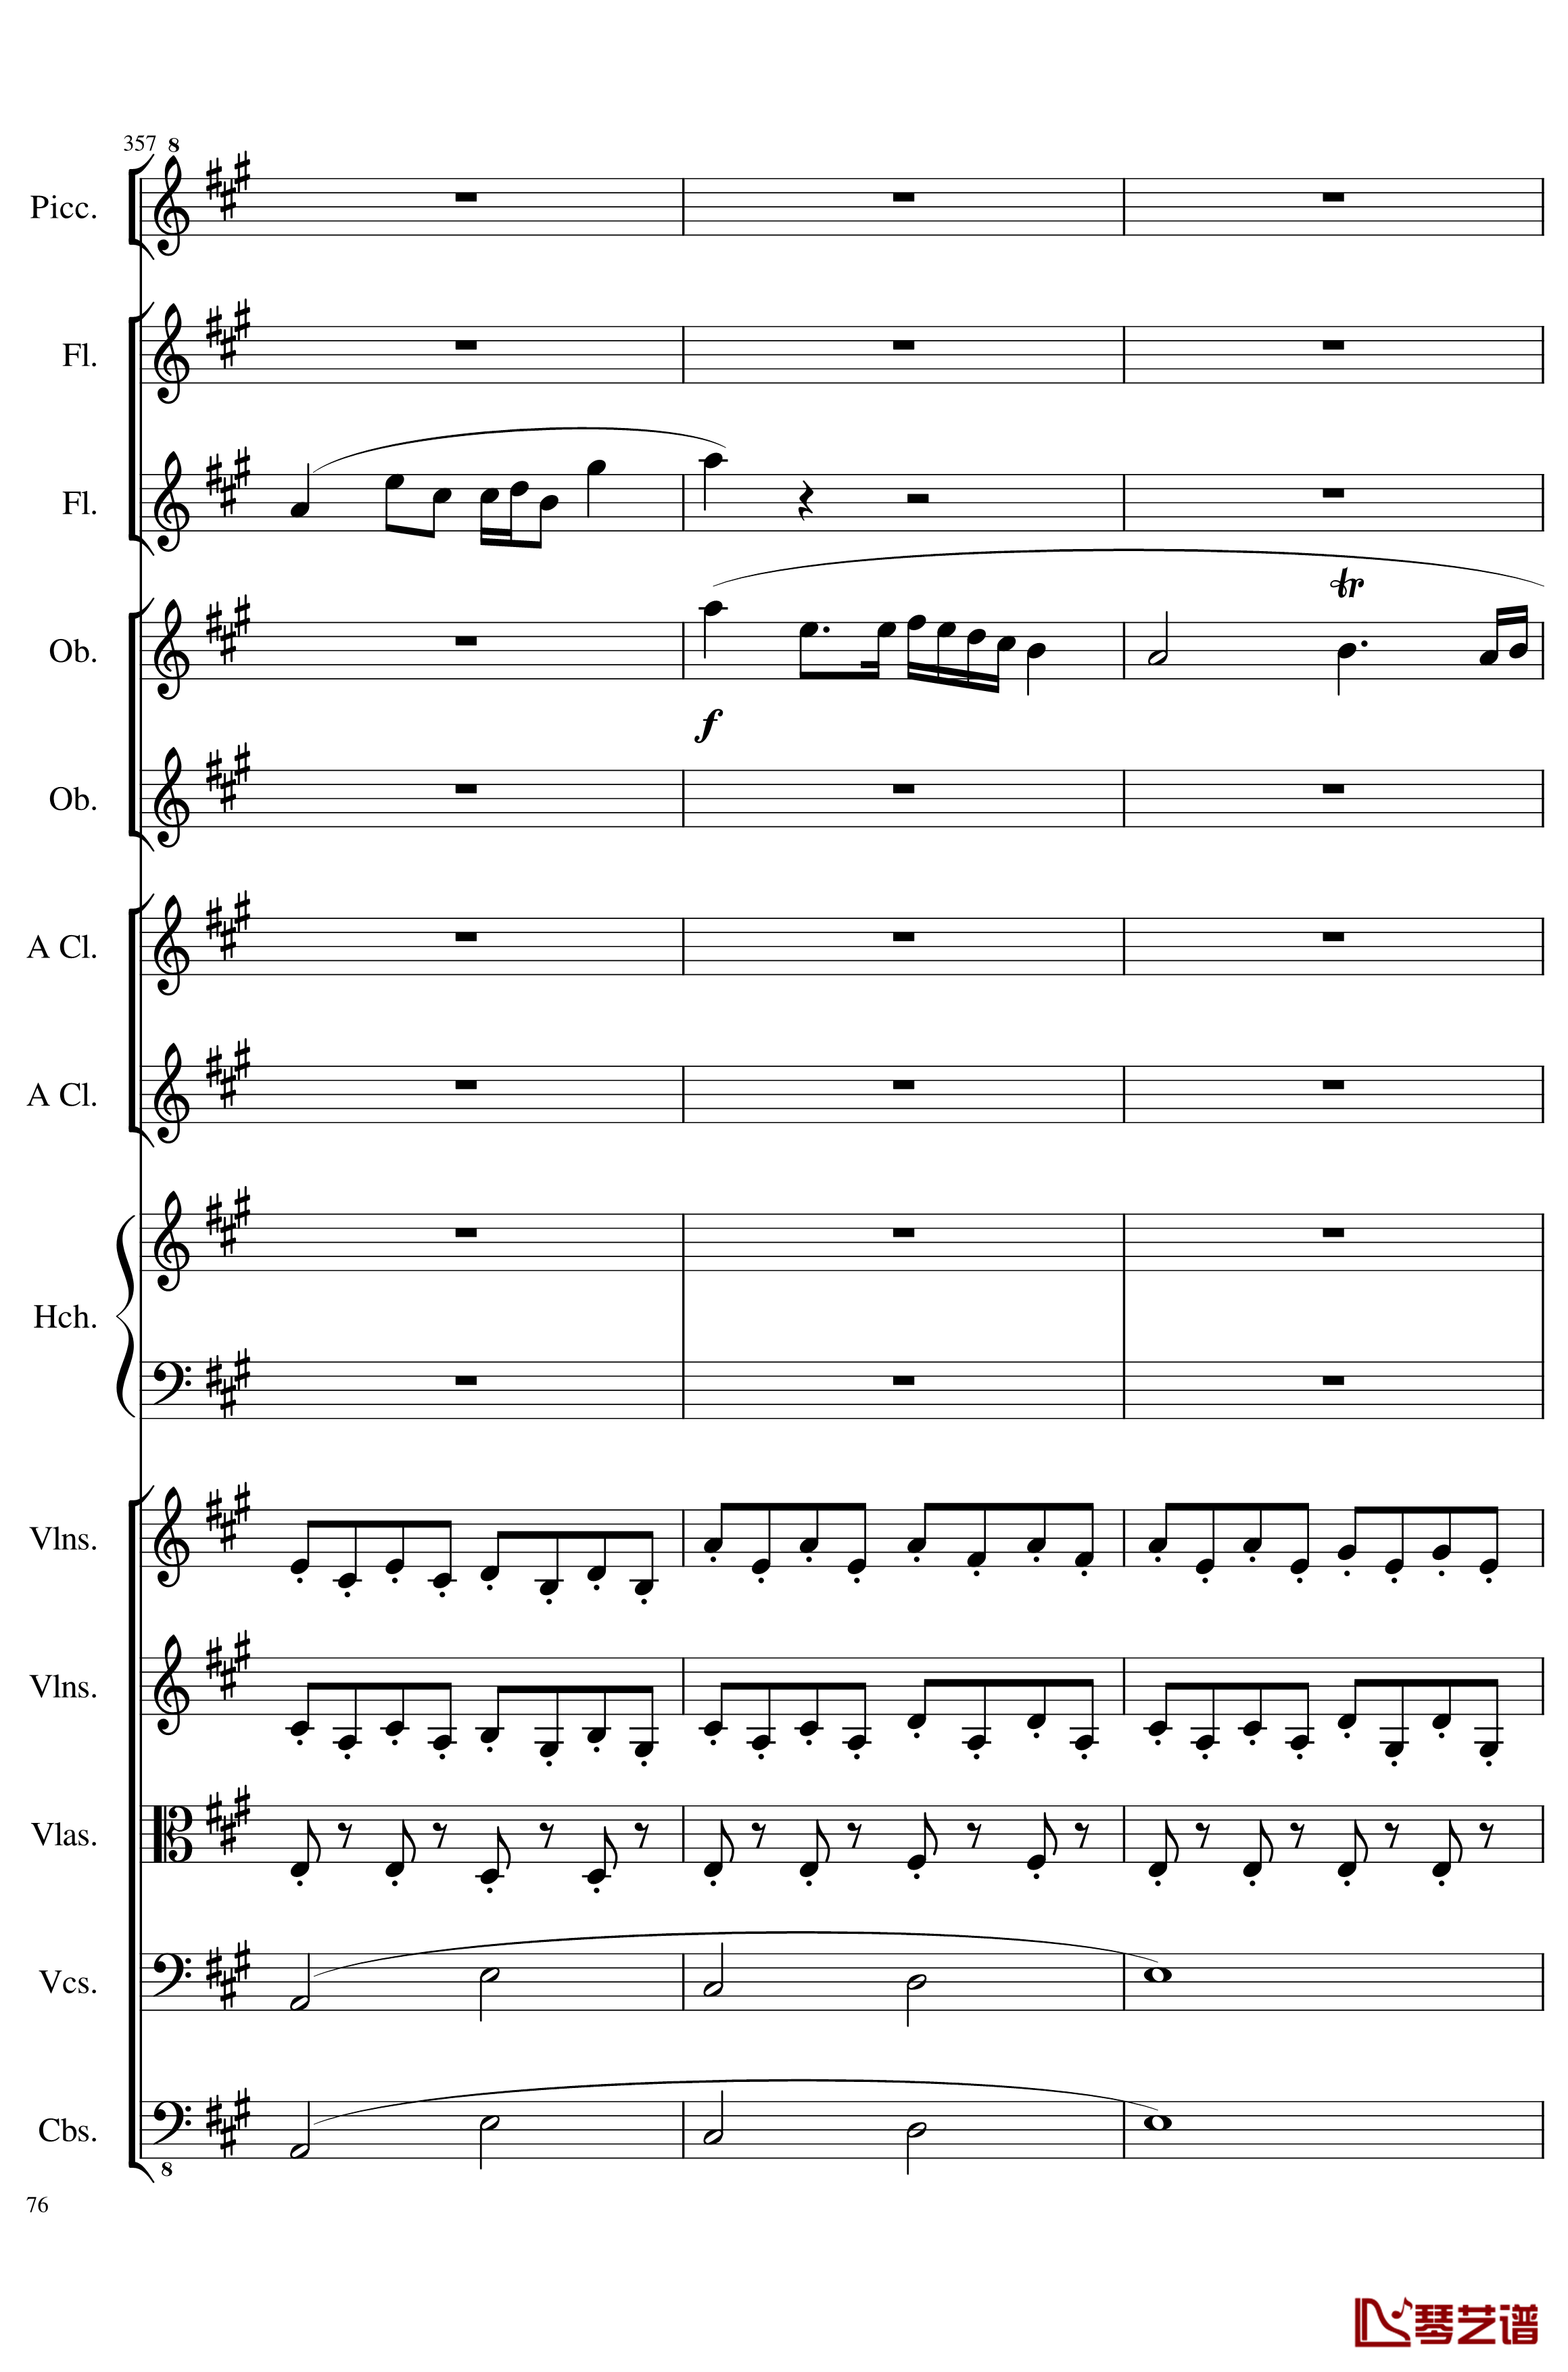 7 Contredanses No.1-7, Op.124钢琴谱-7首乡村舞曲，第一至第七，作品124-一个球76